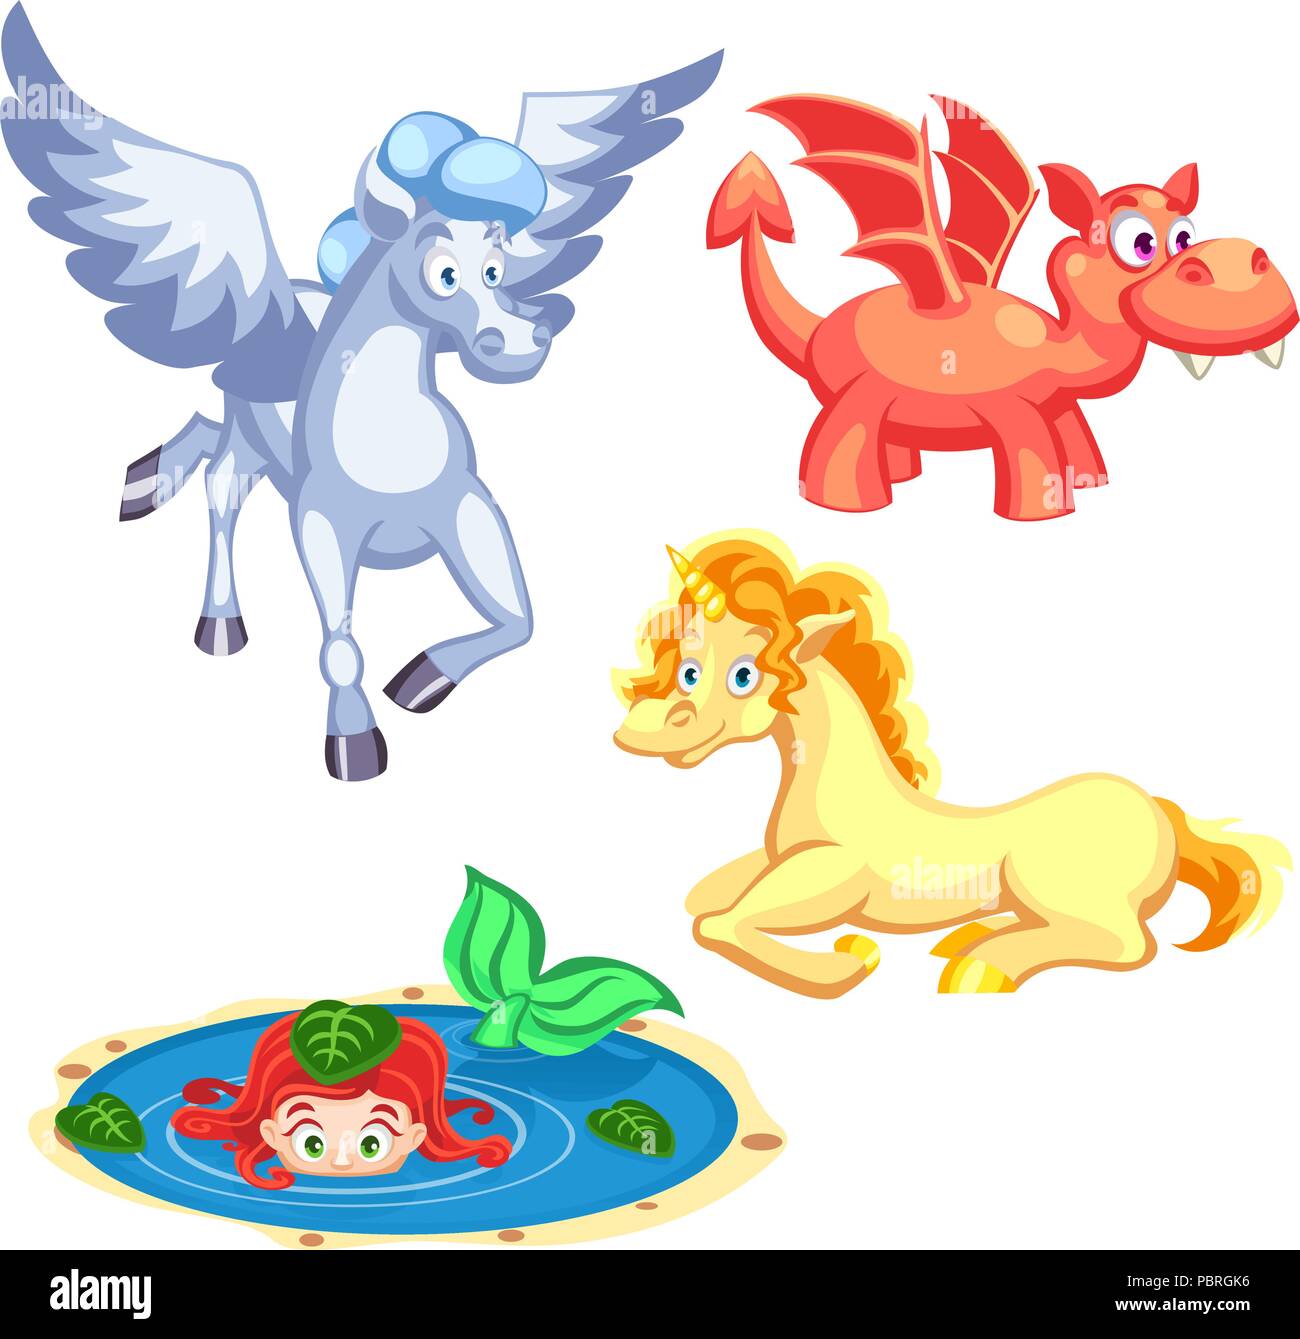 Ensemble de vecteur cartoon fantasy créatures dragon, sirène, licorne, Pégase Illustration de Vecteur